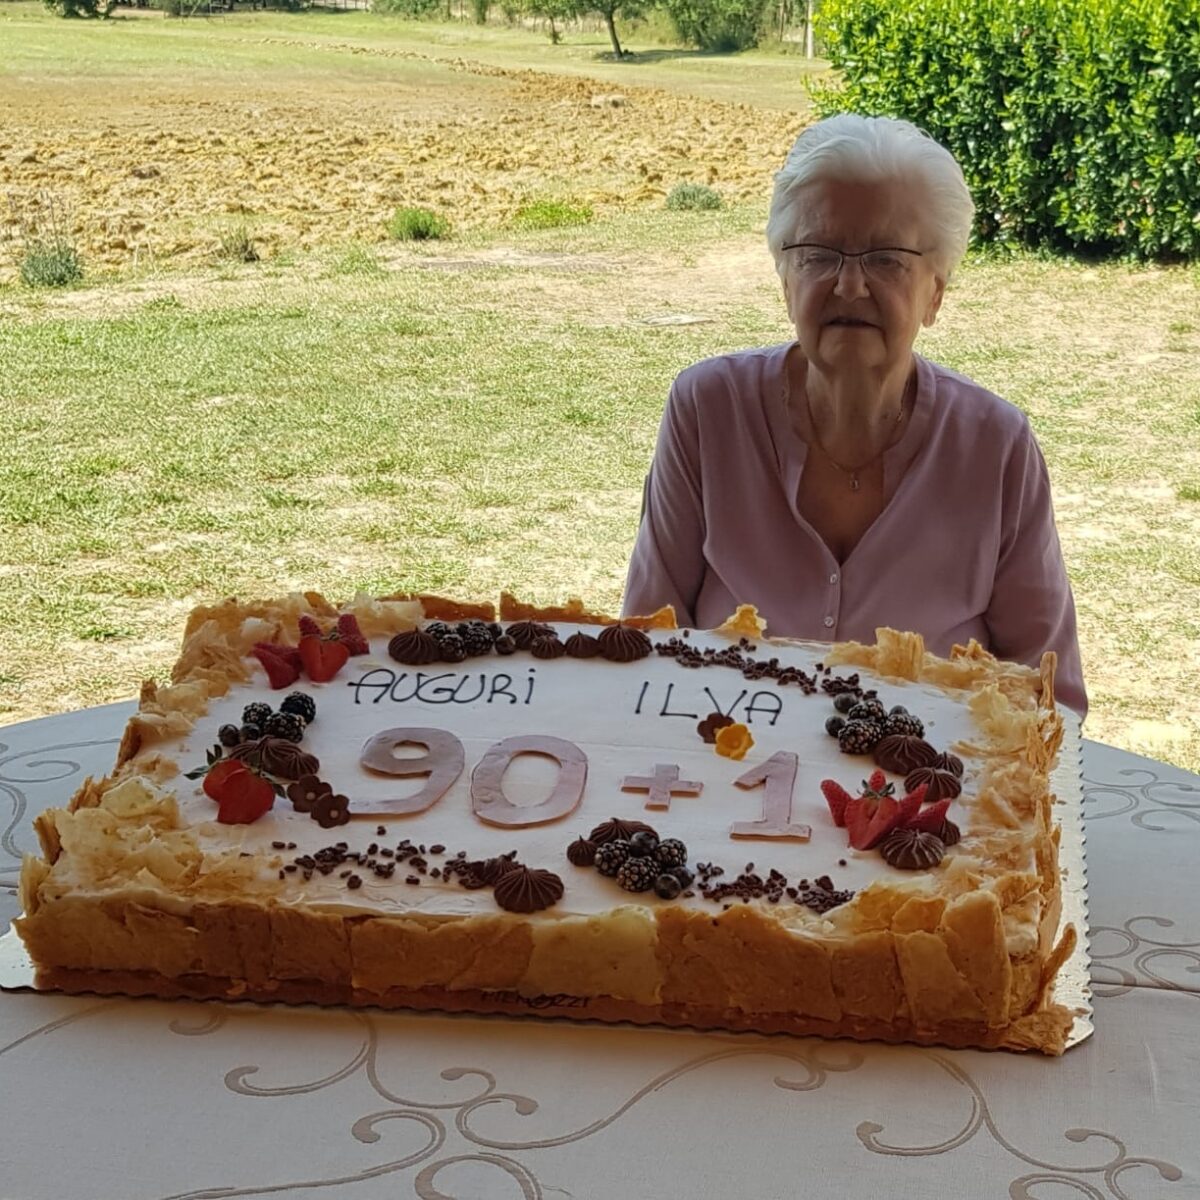 Il gesto di nonna Ilva, compie 90 anni e raccoglie fondi per la… – SR 71